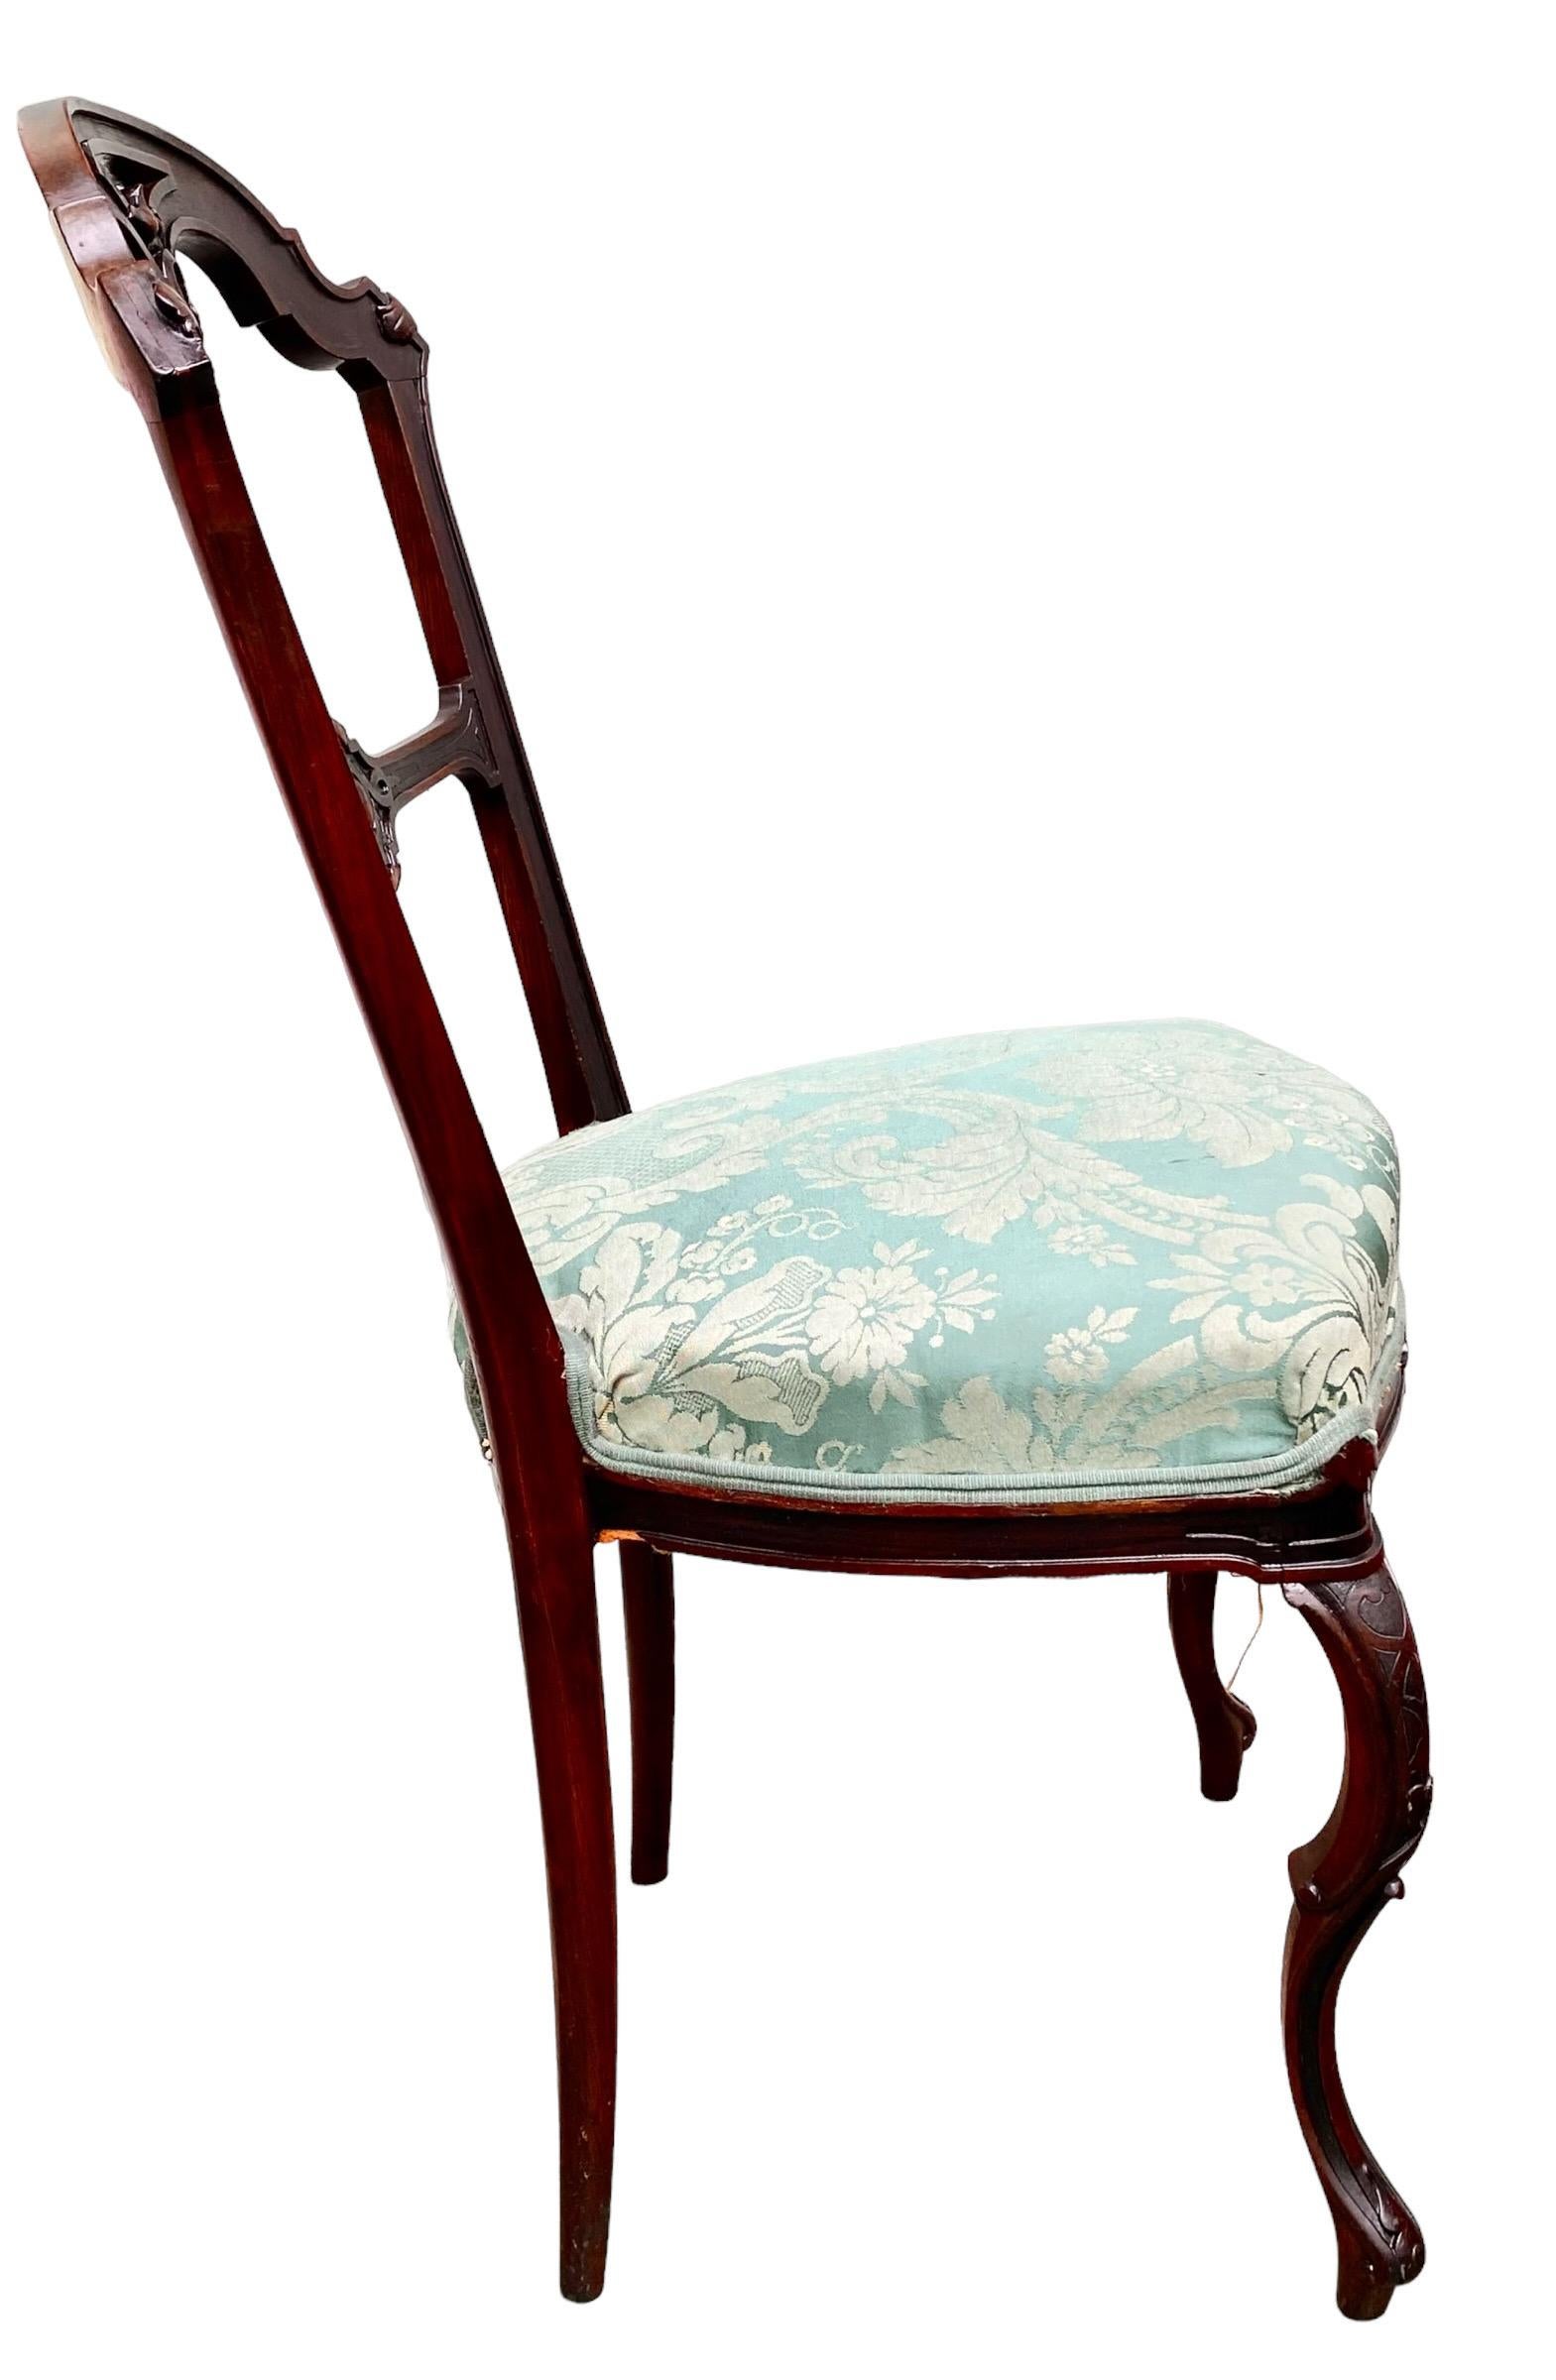 Eine antike, Ende des 19. Jahrhunderts Französisch Belle Epoch, aufwendig von Hand geschnitzt Mahagoni Akzent / Seite Stuhl, mit den meisten anmutig, doppelt geschwungen, Cabriole Beine. Die Belle Epoch in Frankreich war ein goldenes Zeitalter von